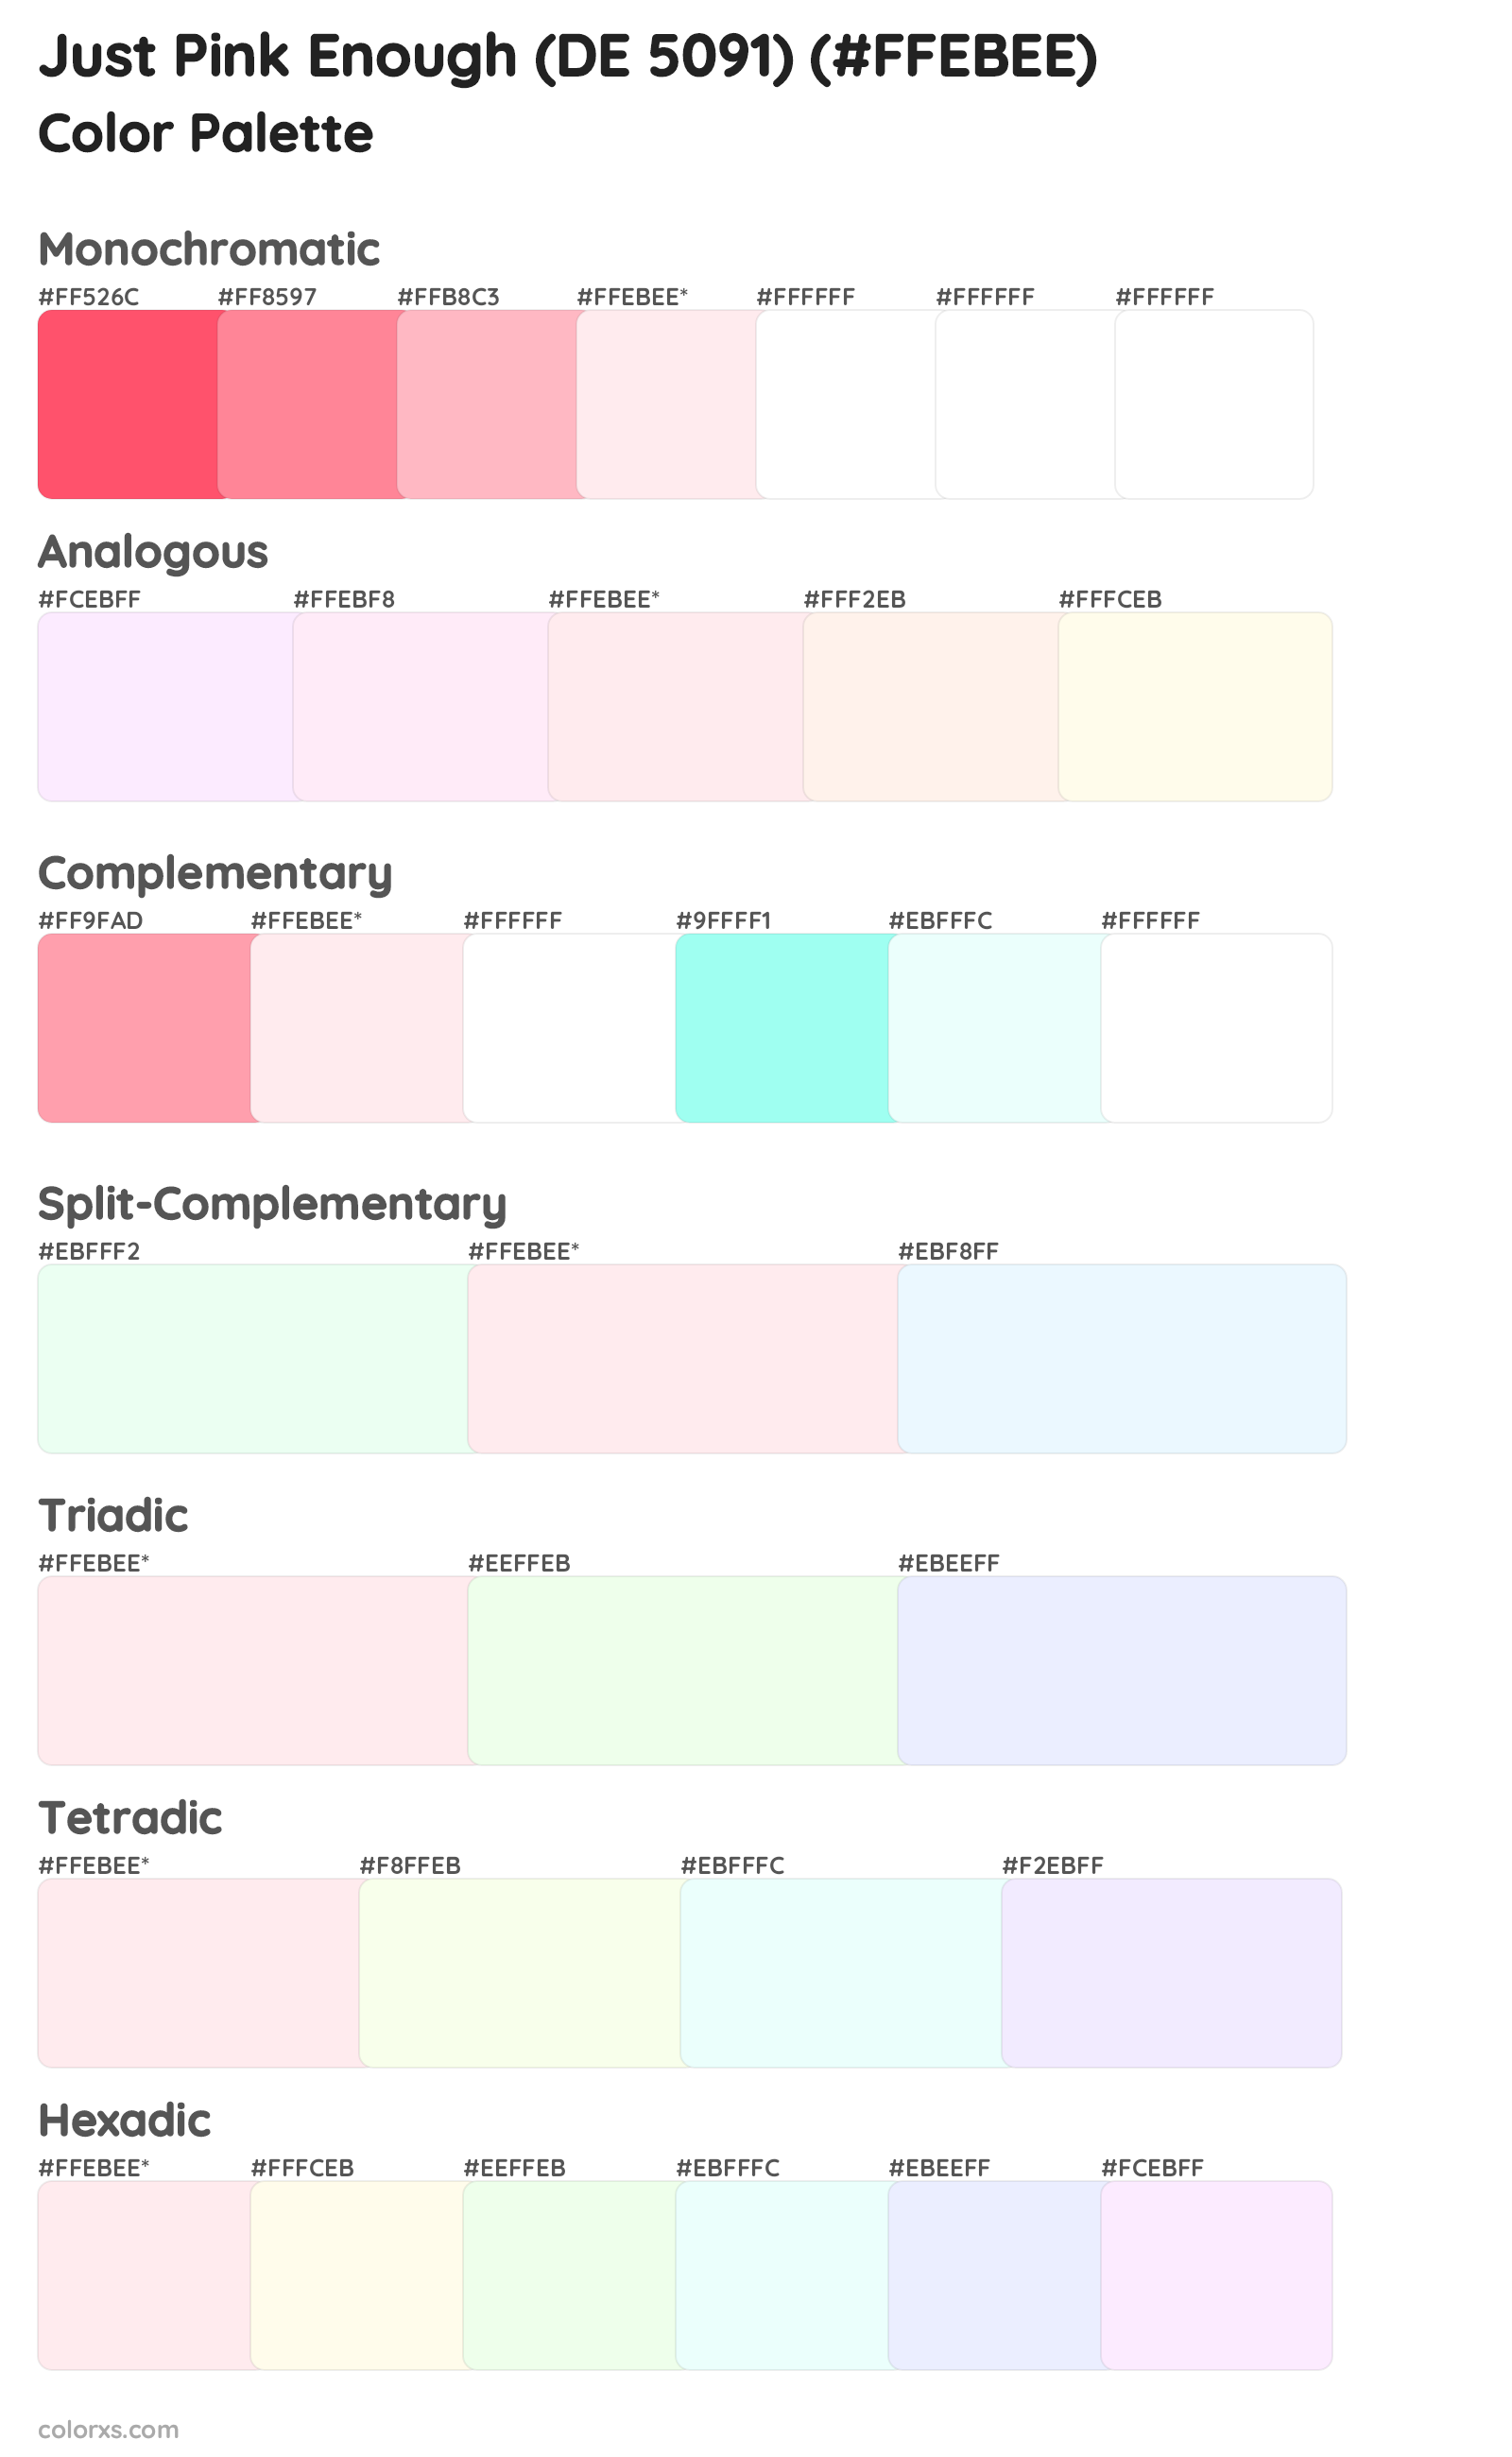 Just Pink Enough (DE 5091) Color Scheme Palettes